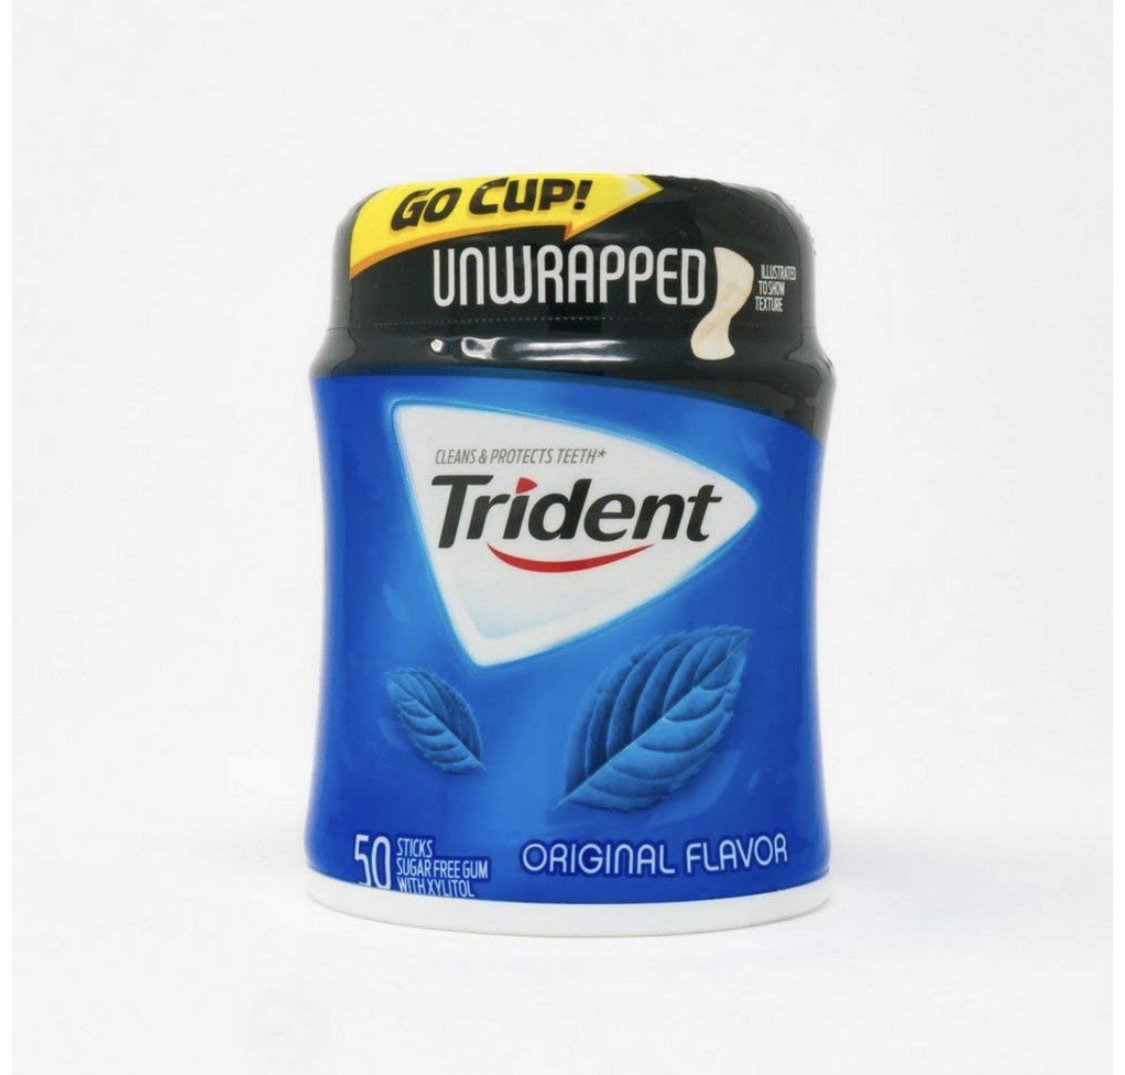 Trident Gum Hidden Safe Home Diversion Safe Stash Safe - Concealment Cans